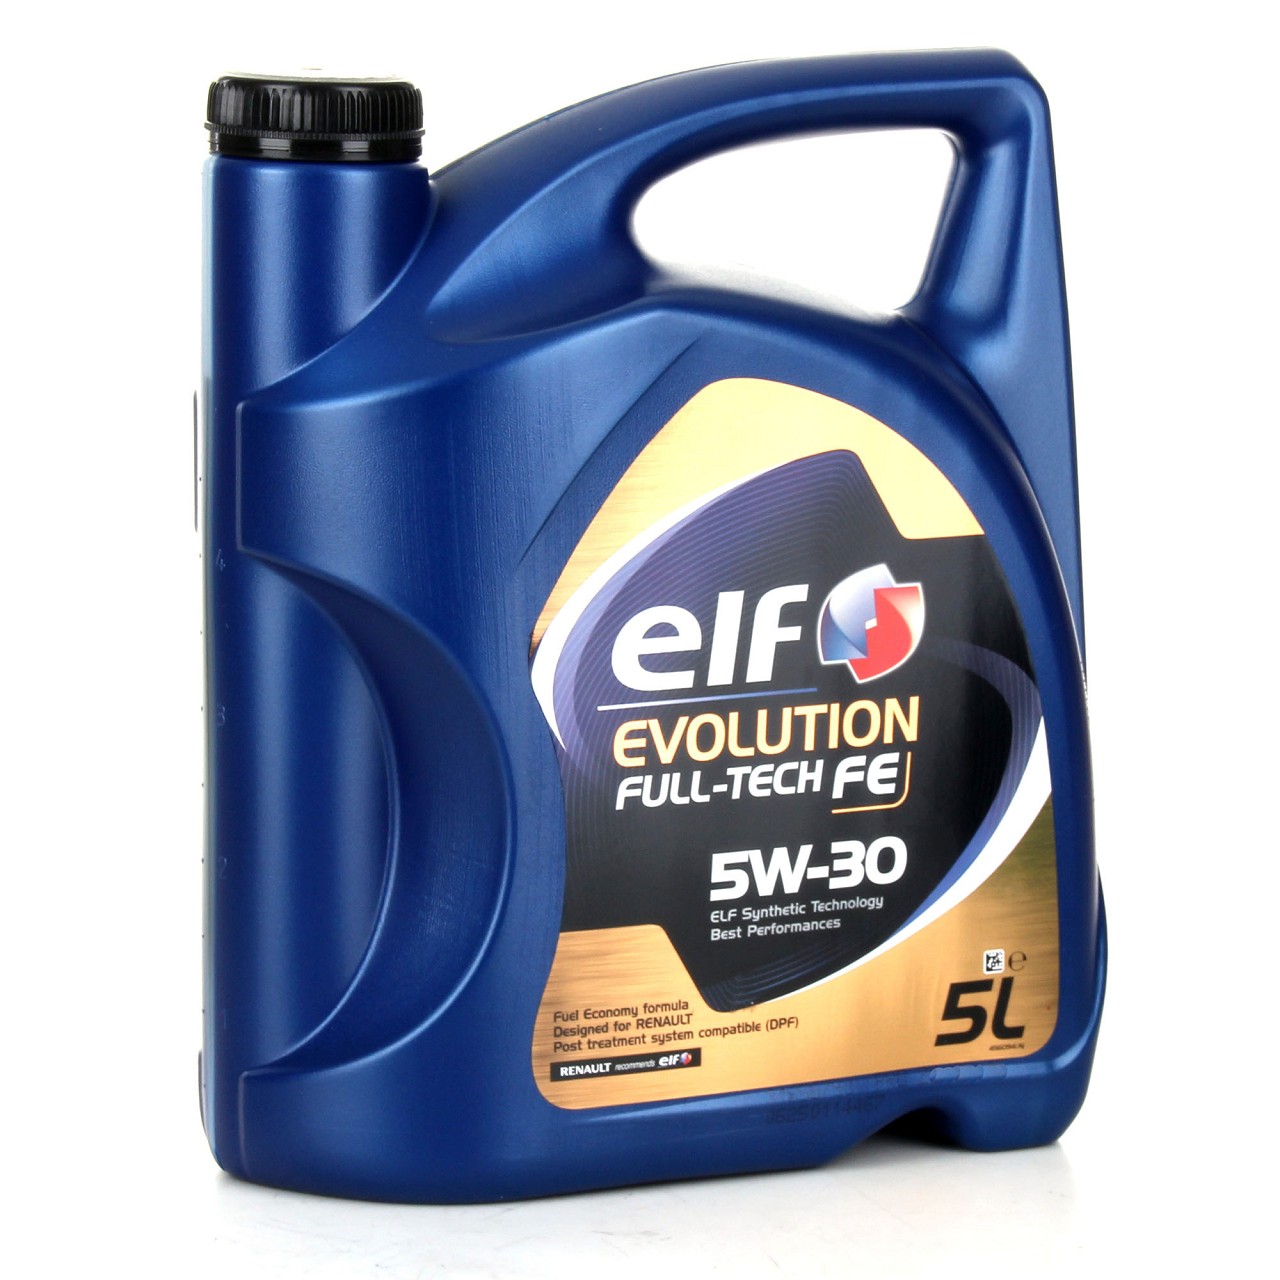 8L elf Evolution Full-Tech FE 5W-30 Motoröl ORIGINAL Renault Ölfilter 8200362442